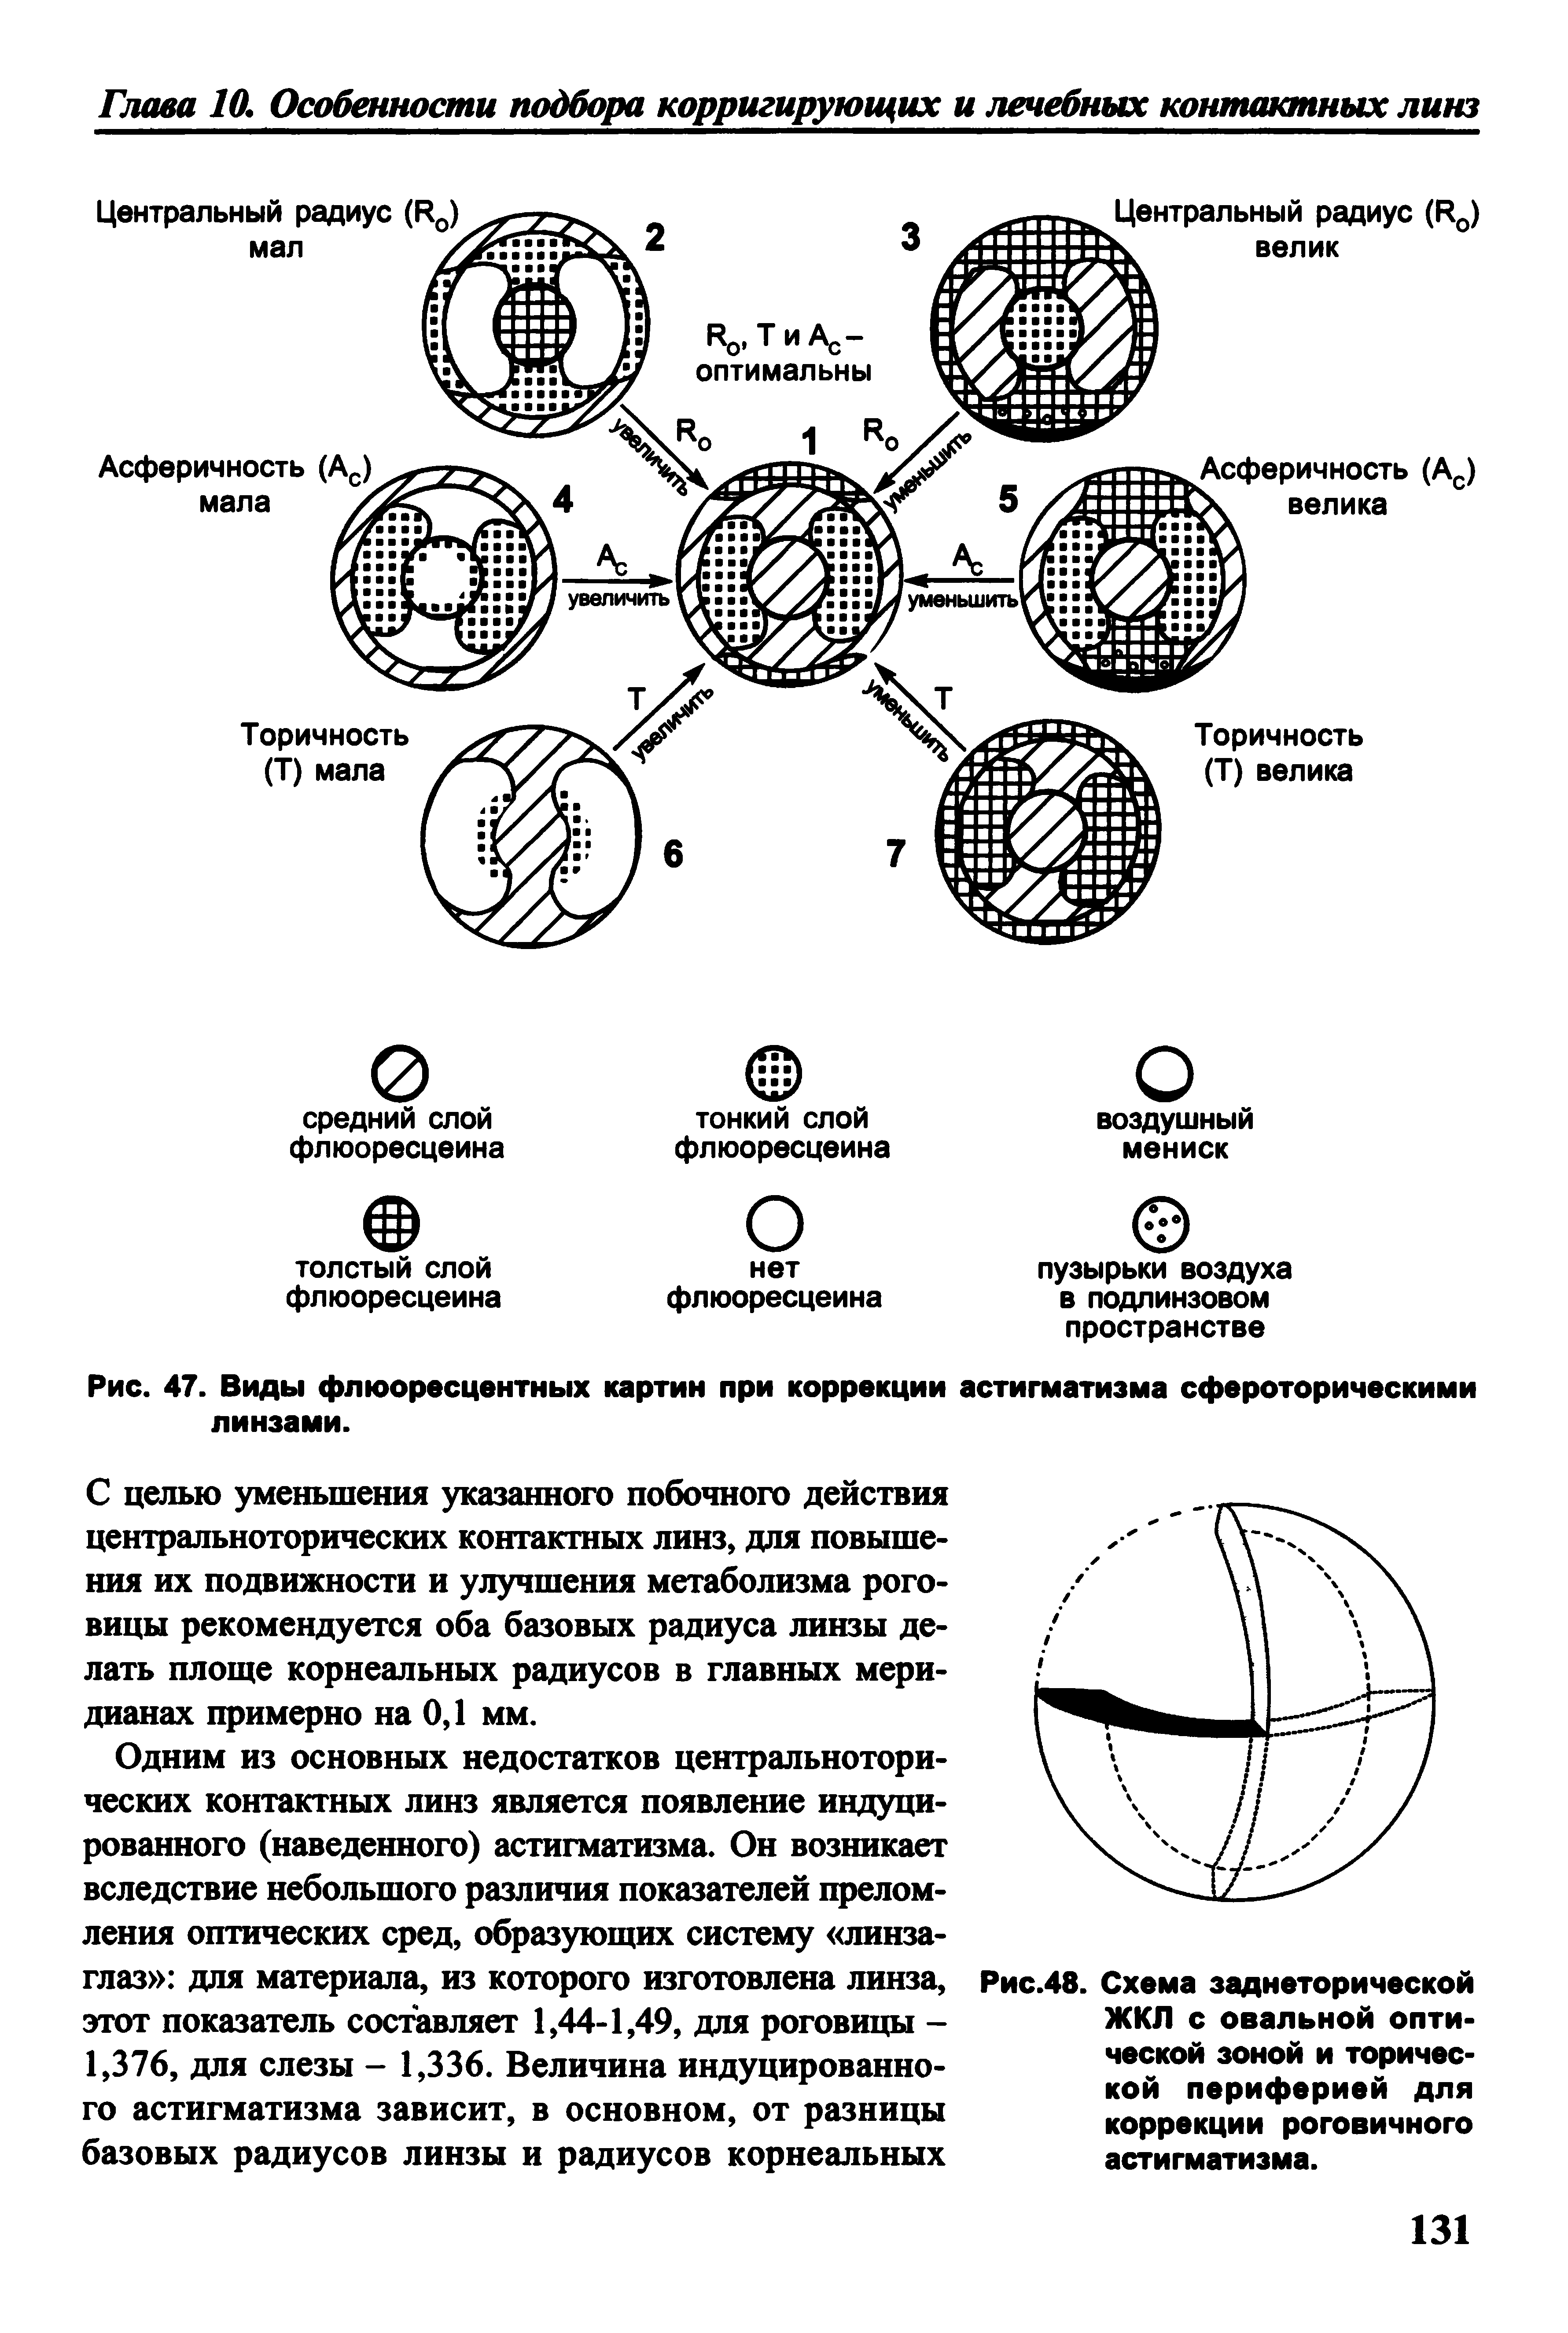 Рис.48. Схема заднеторической ЖКЛ с овальной оптической зоной и торичес-кой периферией для коррекции роговичного астигматизма.